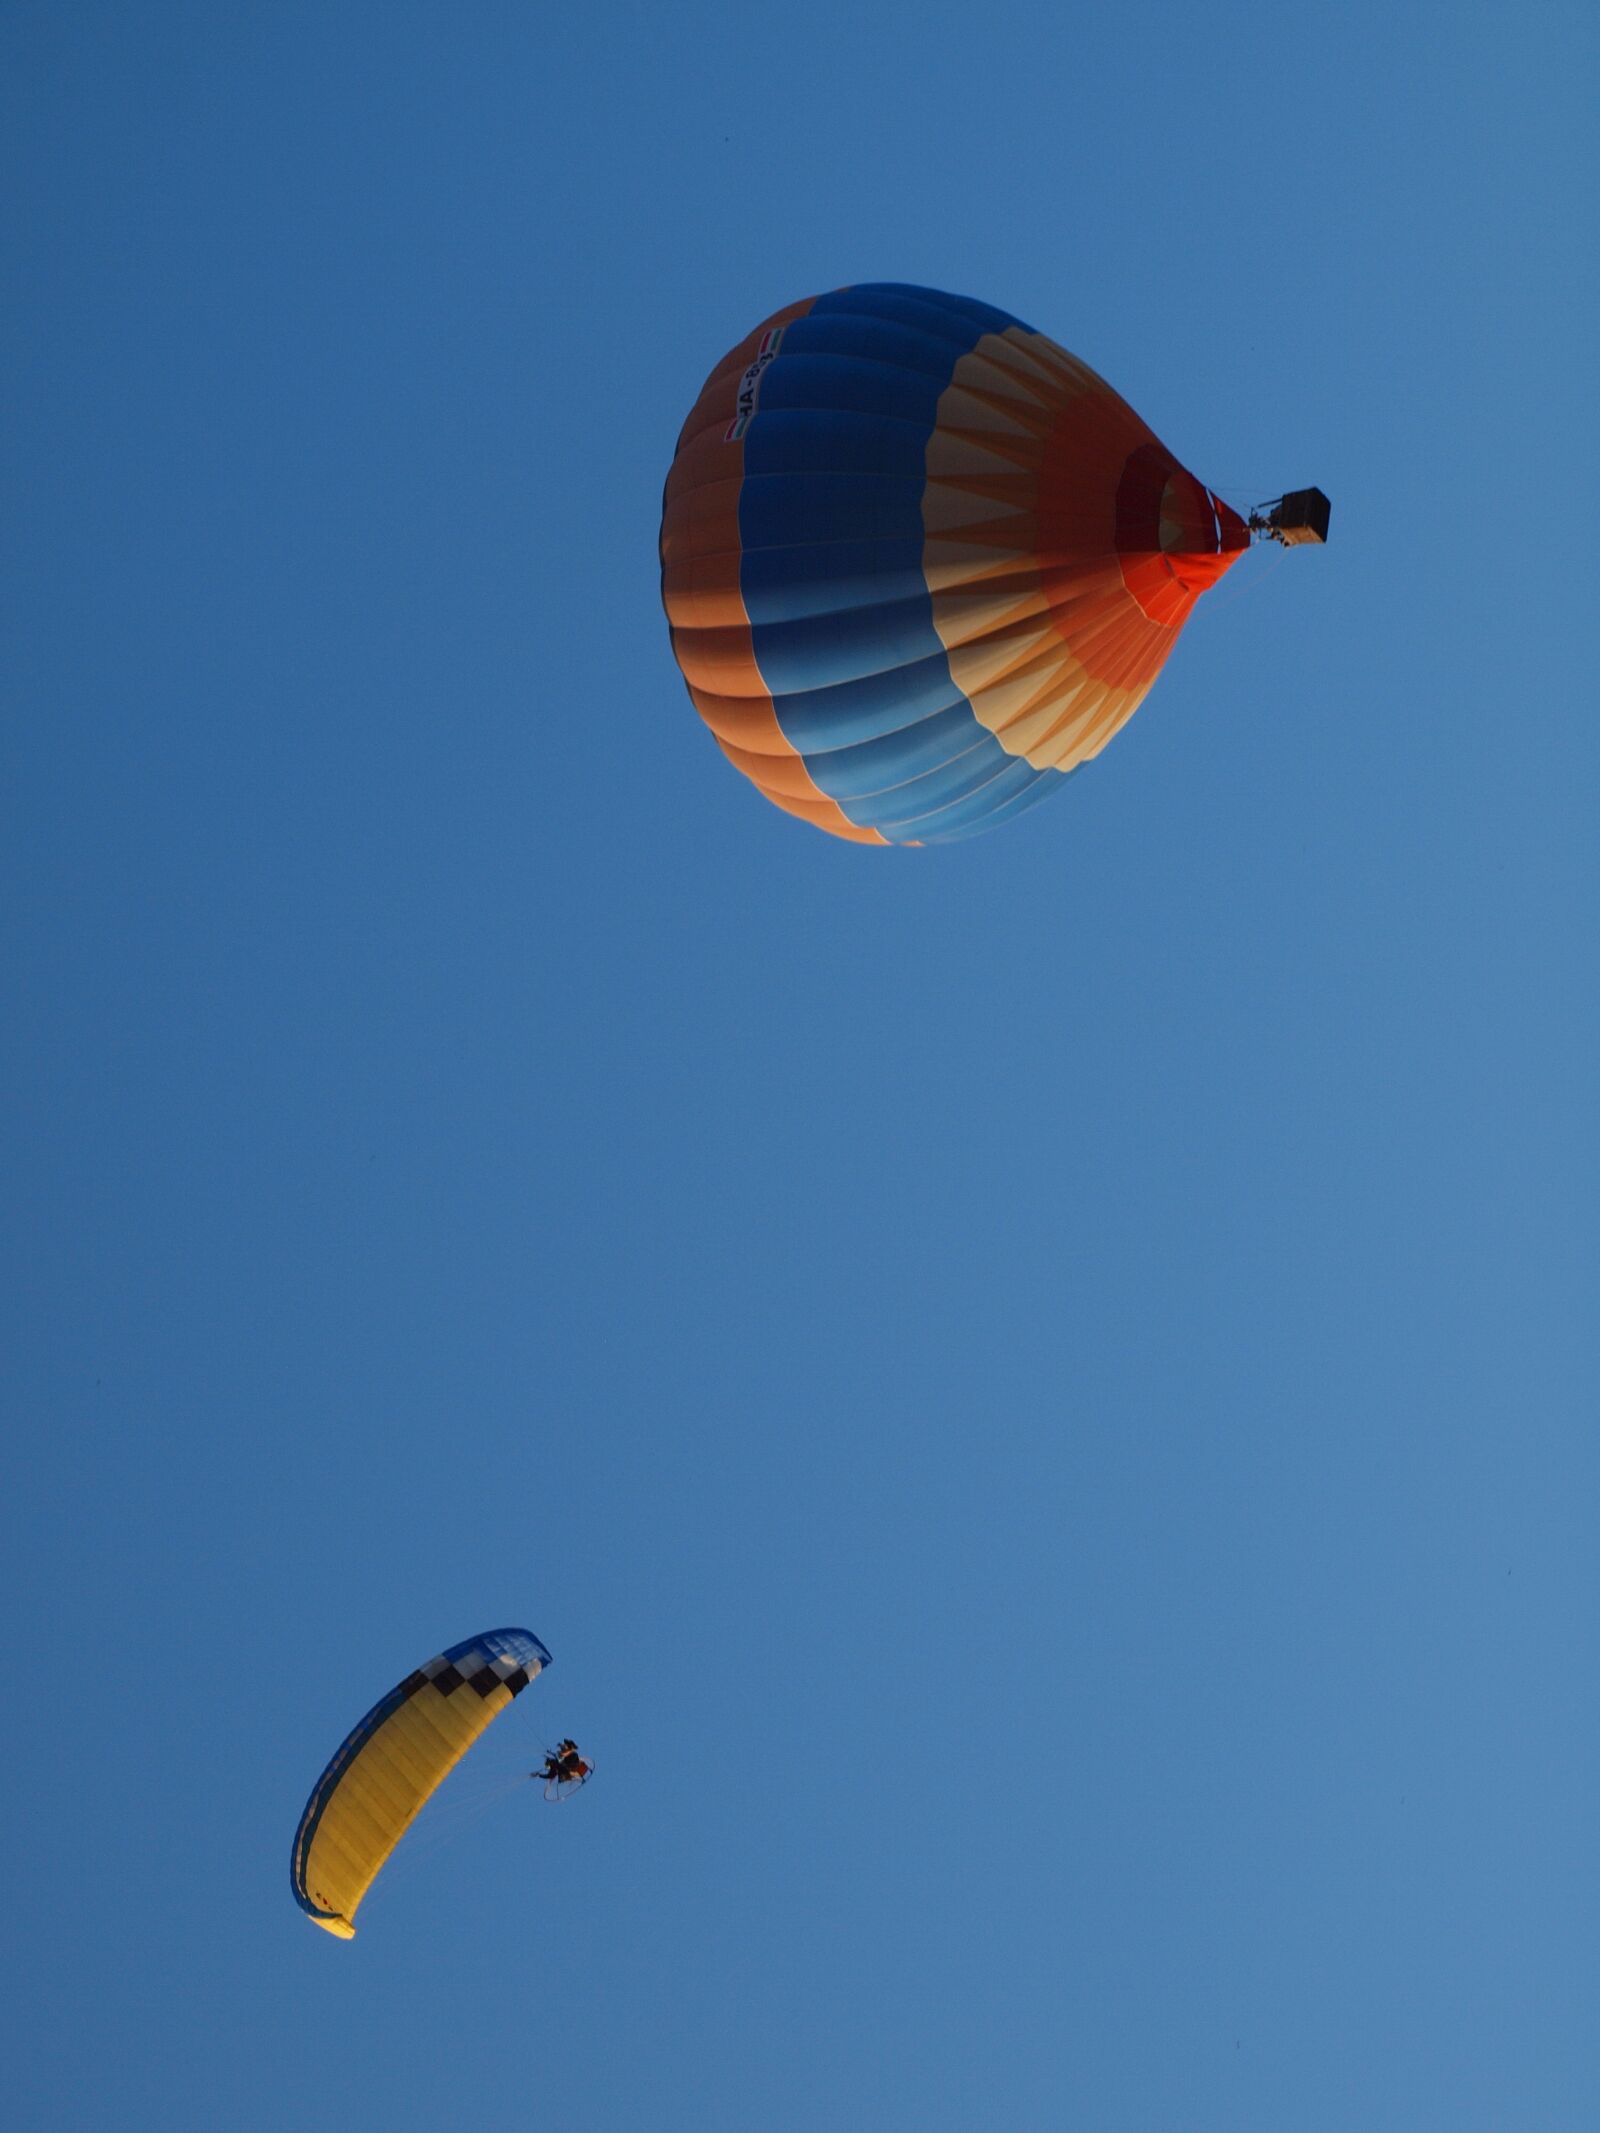 Olympus E-600 (EVOLT E-600) sample photo. Hot air balloon, paragliding photography